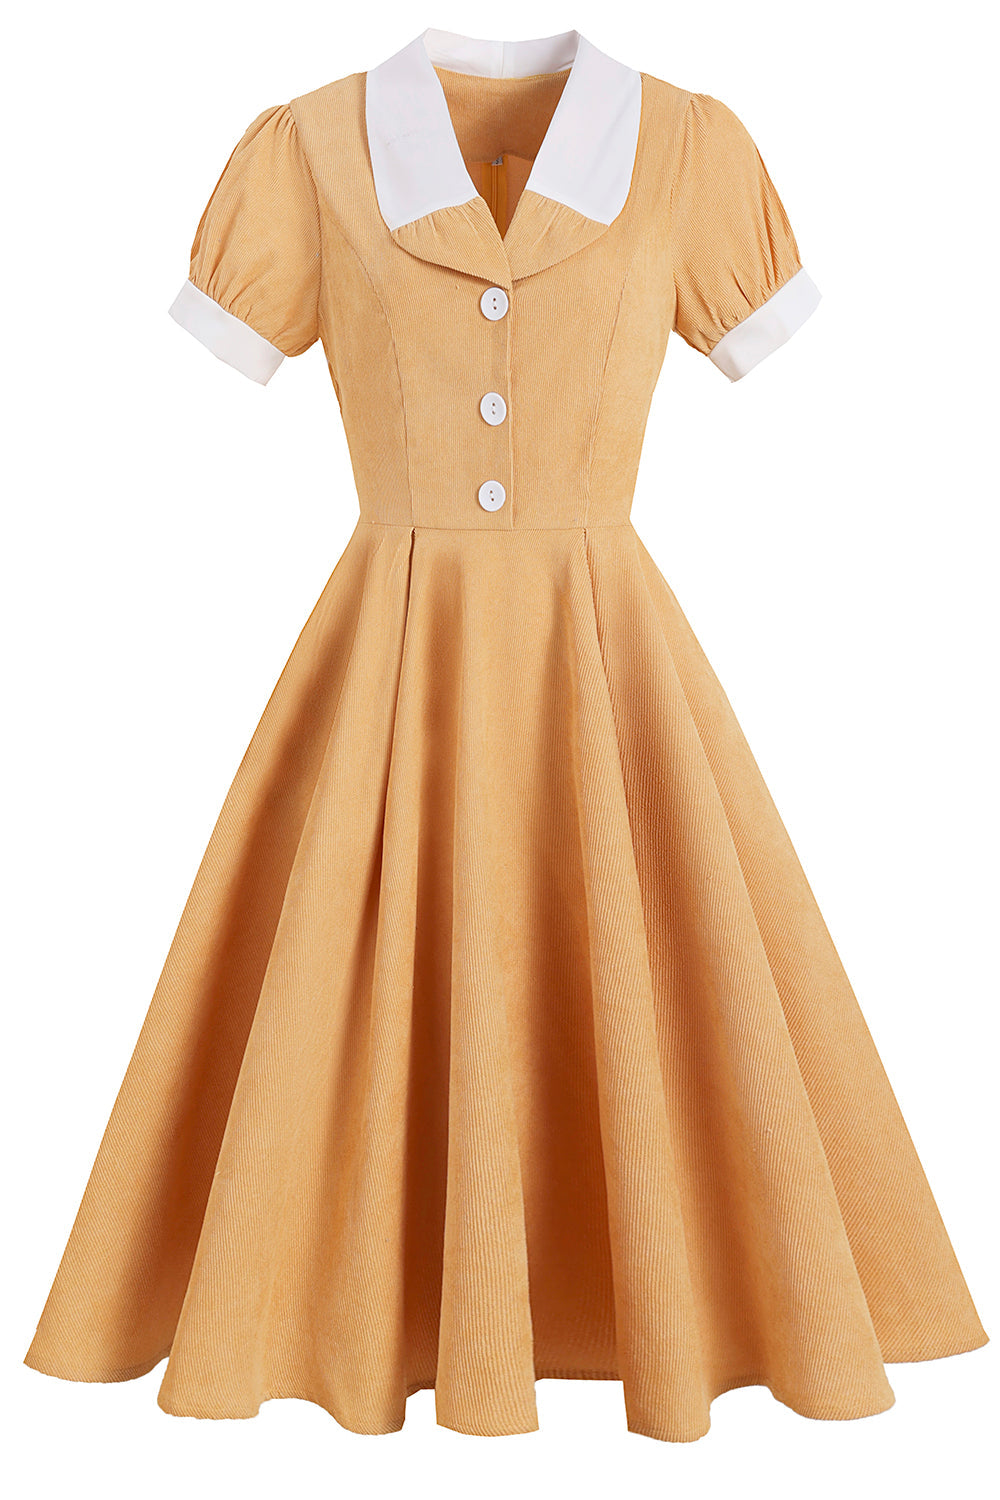 Vestido amarillo vintage sólido de la década de 1950